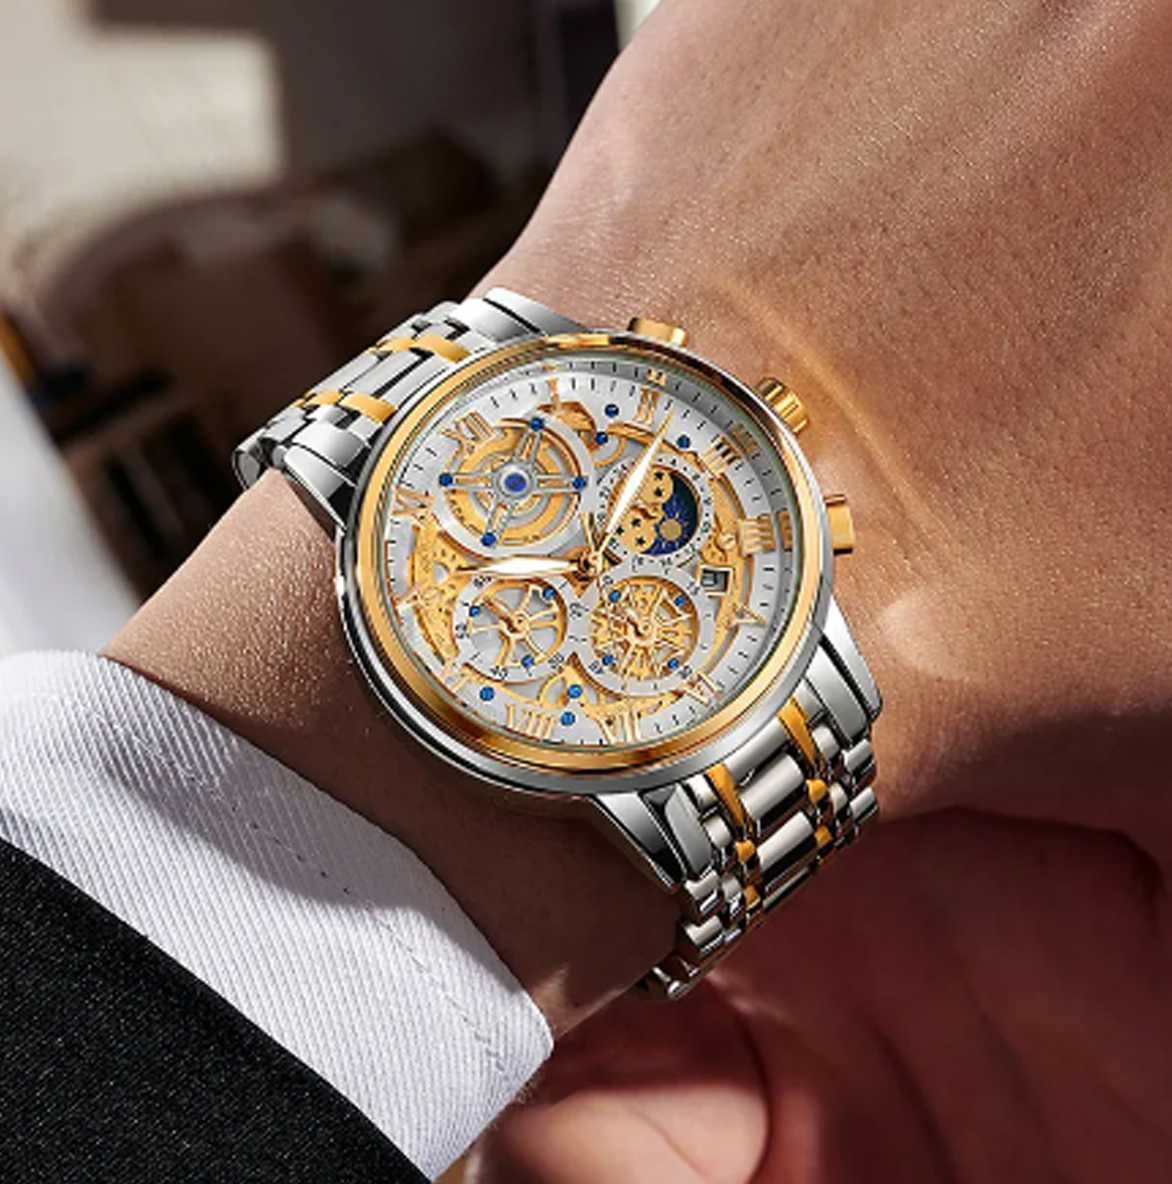 Relógio Quartzo, Design de Luxo, para Homem (NOVO) = 40 euros